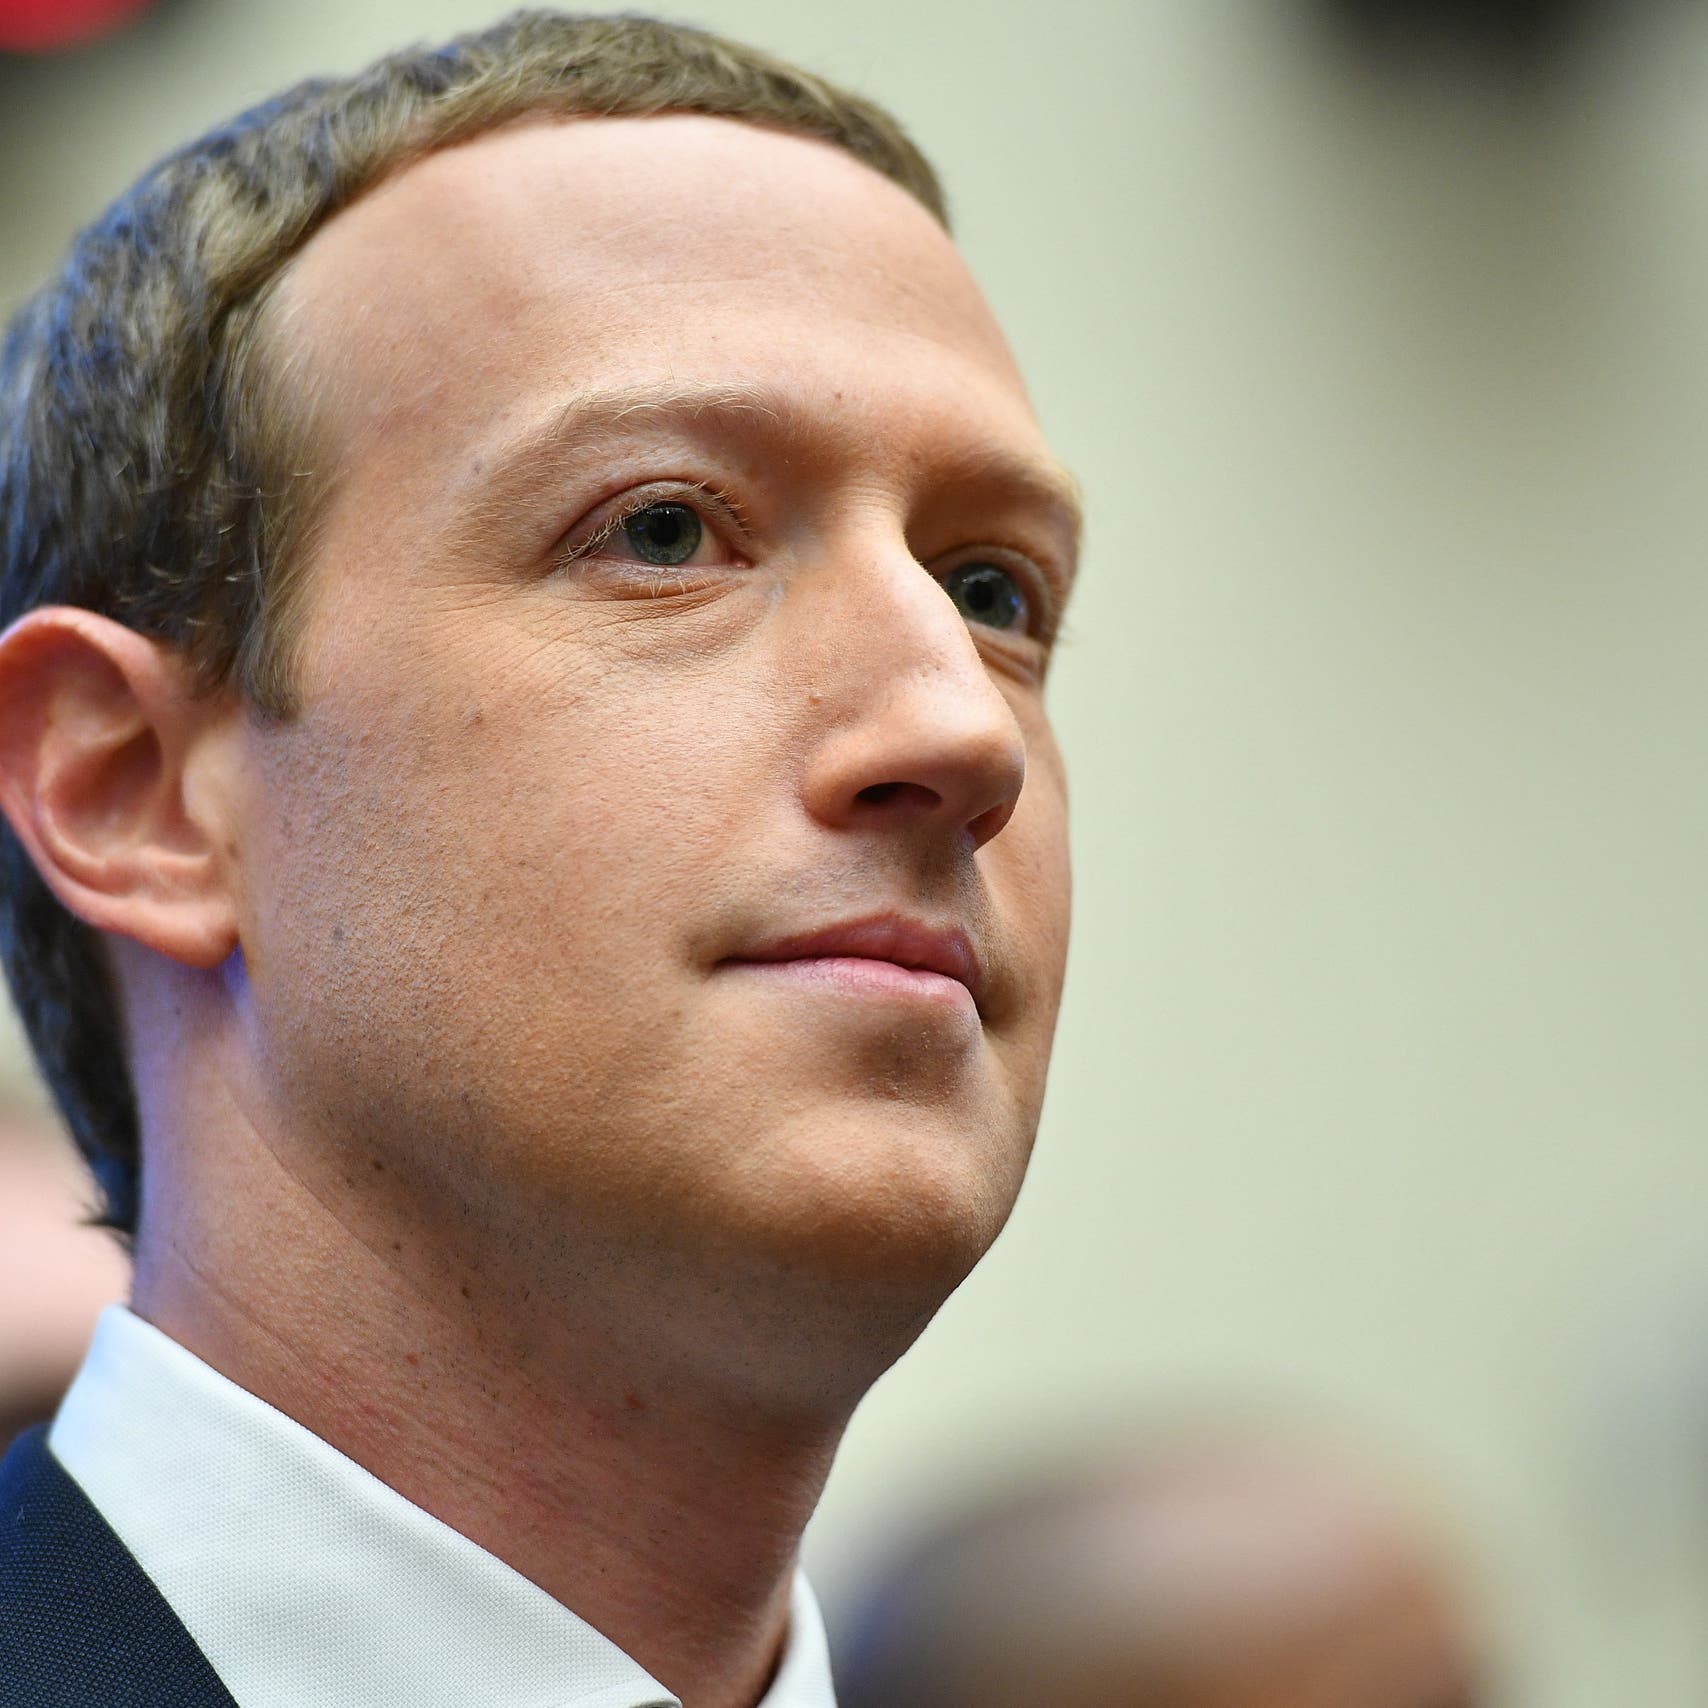 توتر عنيف.. مؤسس فيسبوك لموظفيه: ألحقوا الأذى بشركة آبل